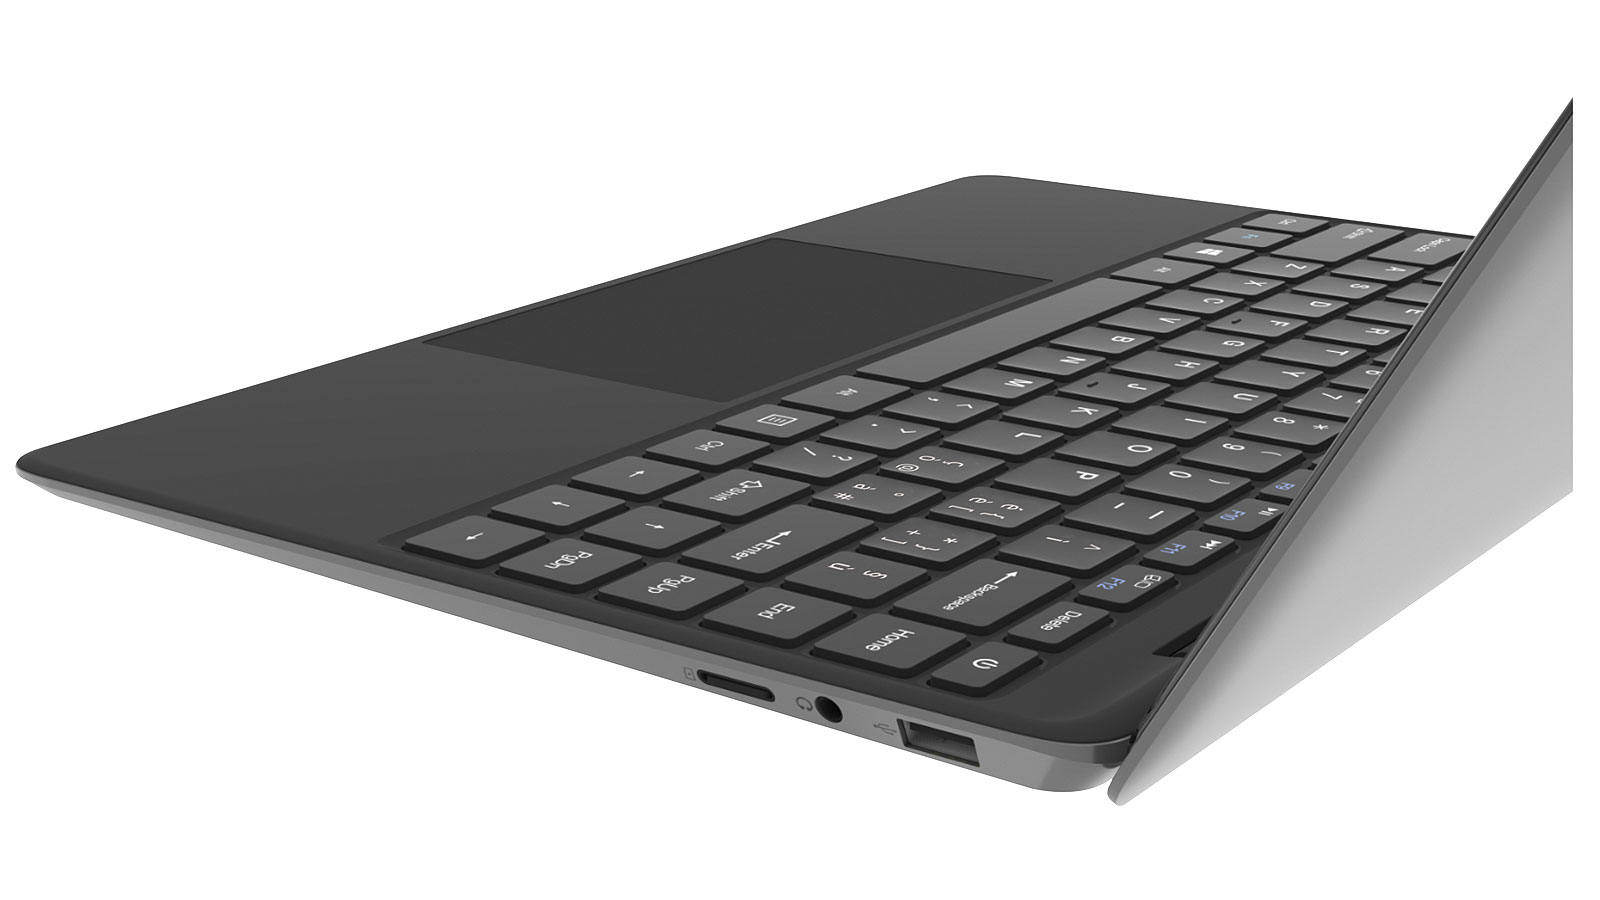 Notebook Mediacom SmartBook edge 13.3 Computer portatile 33,8 cm (13.3